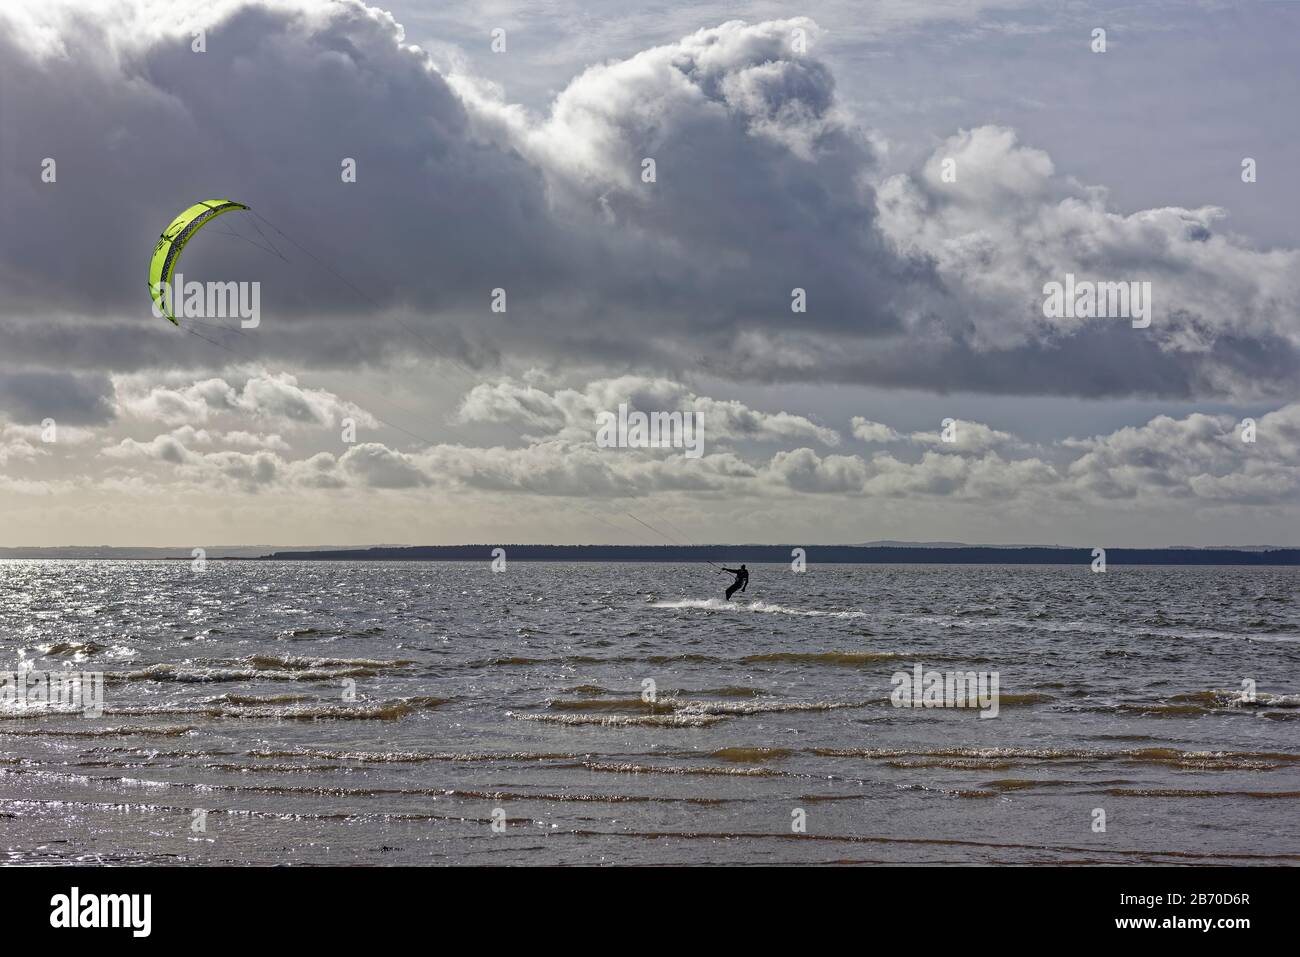 Ein Kite Surfer in der Tay Estuary an der Ostküste Schottlands surft parallel zur Küstenlinie an einem Windy Day im März. Stockfoto